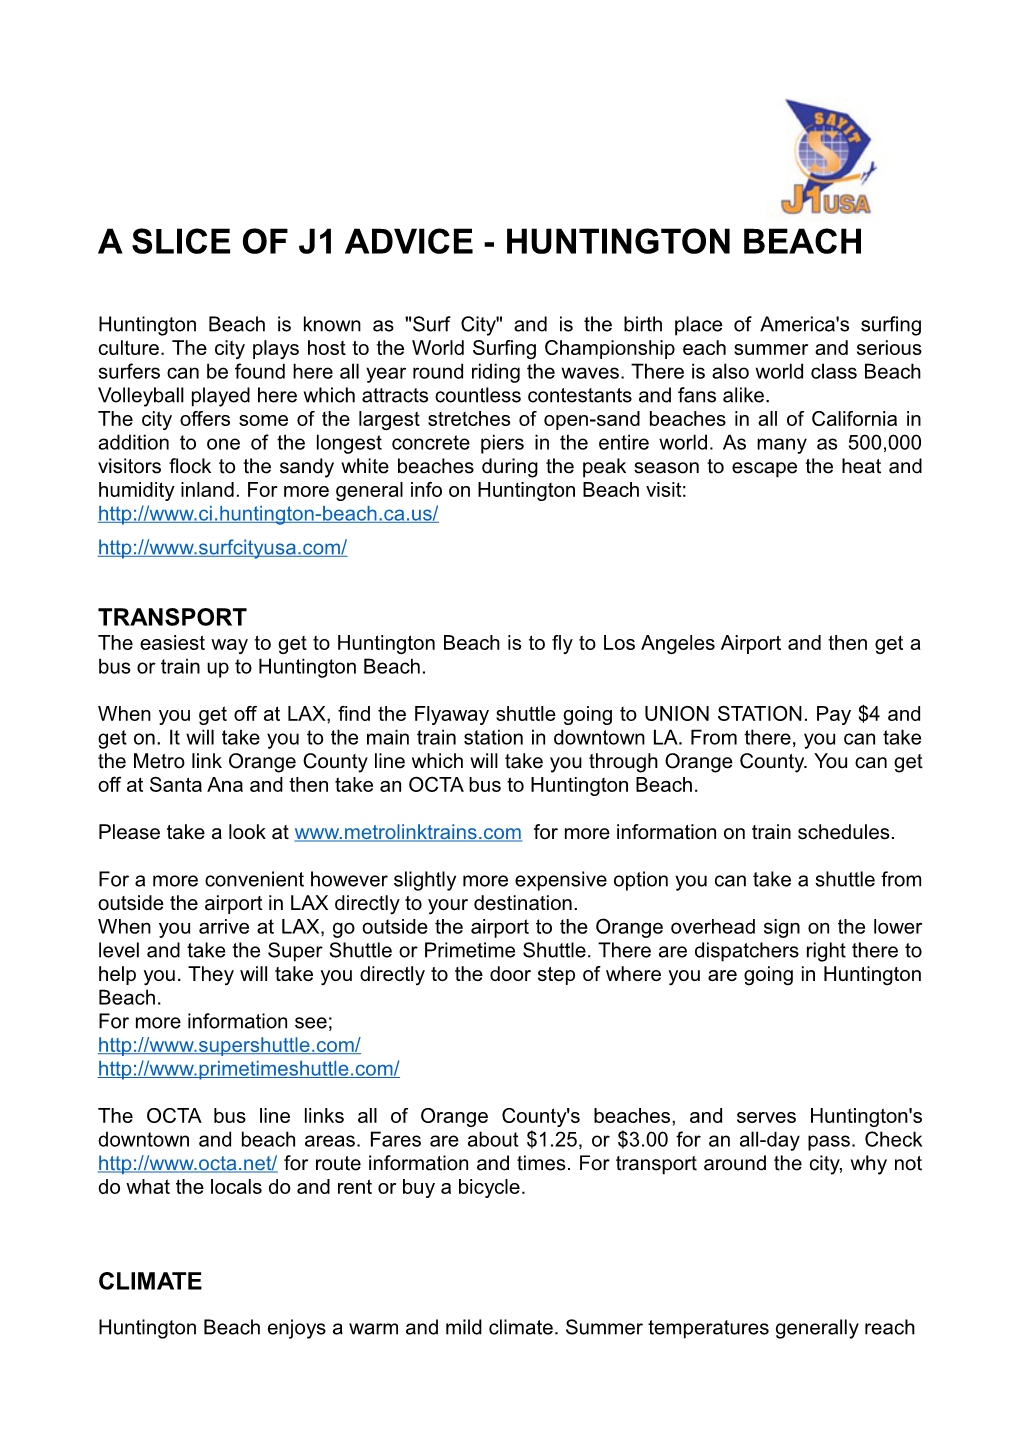 A Slice of J1 Advice -Huntington Beach